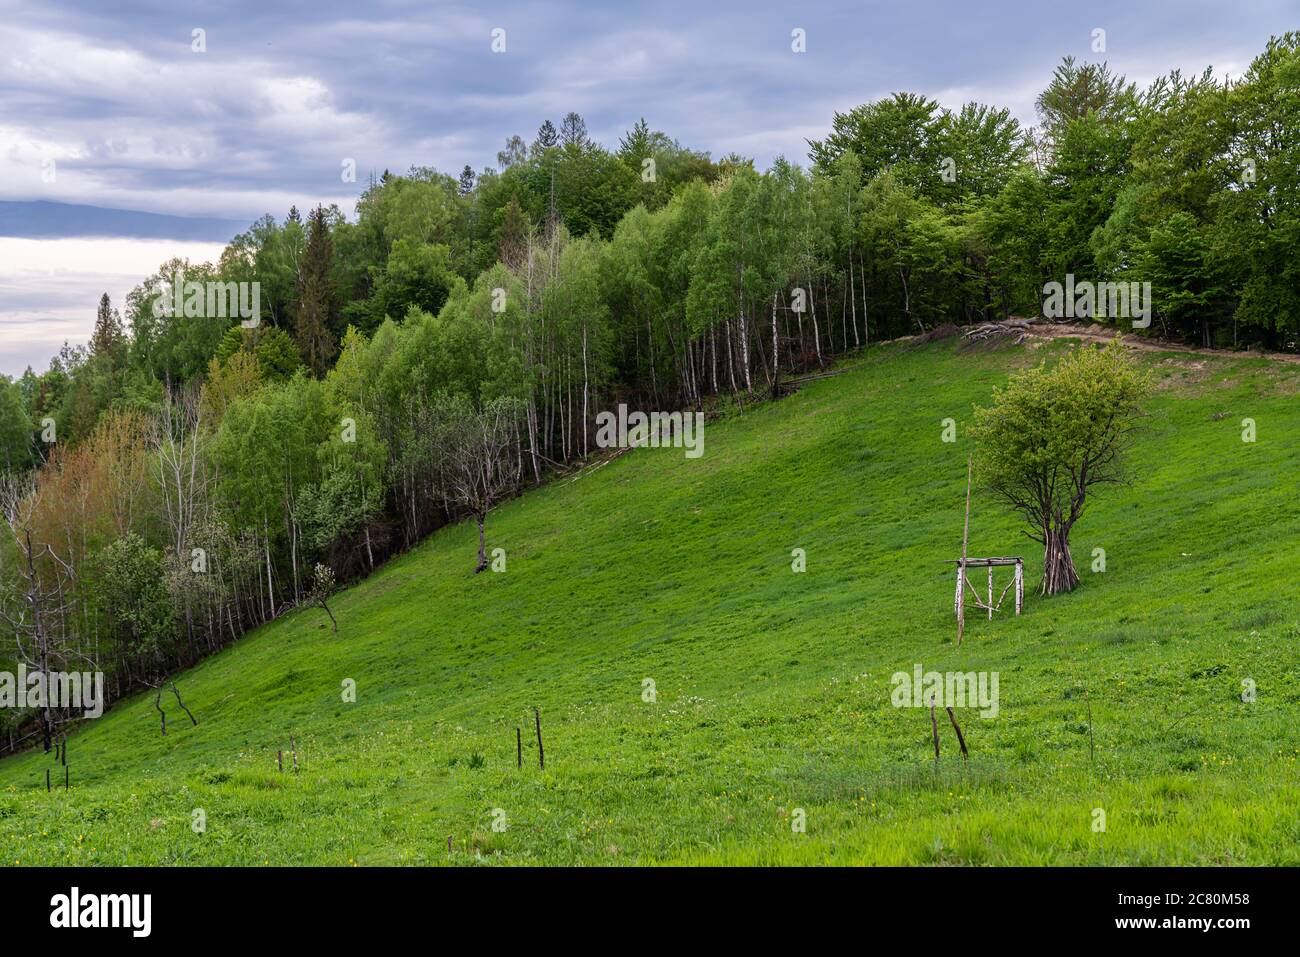 Campagna montagnosa a mezzogiorno, splendido paesaggio rurale con alberi e campi sulle colline ondulate ai piedi del crinale Foto Stock